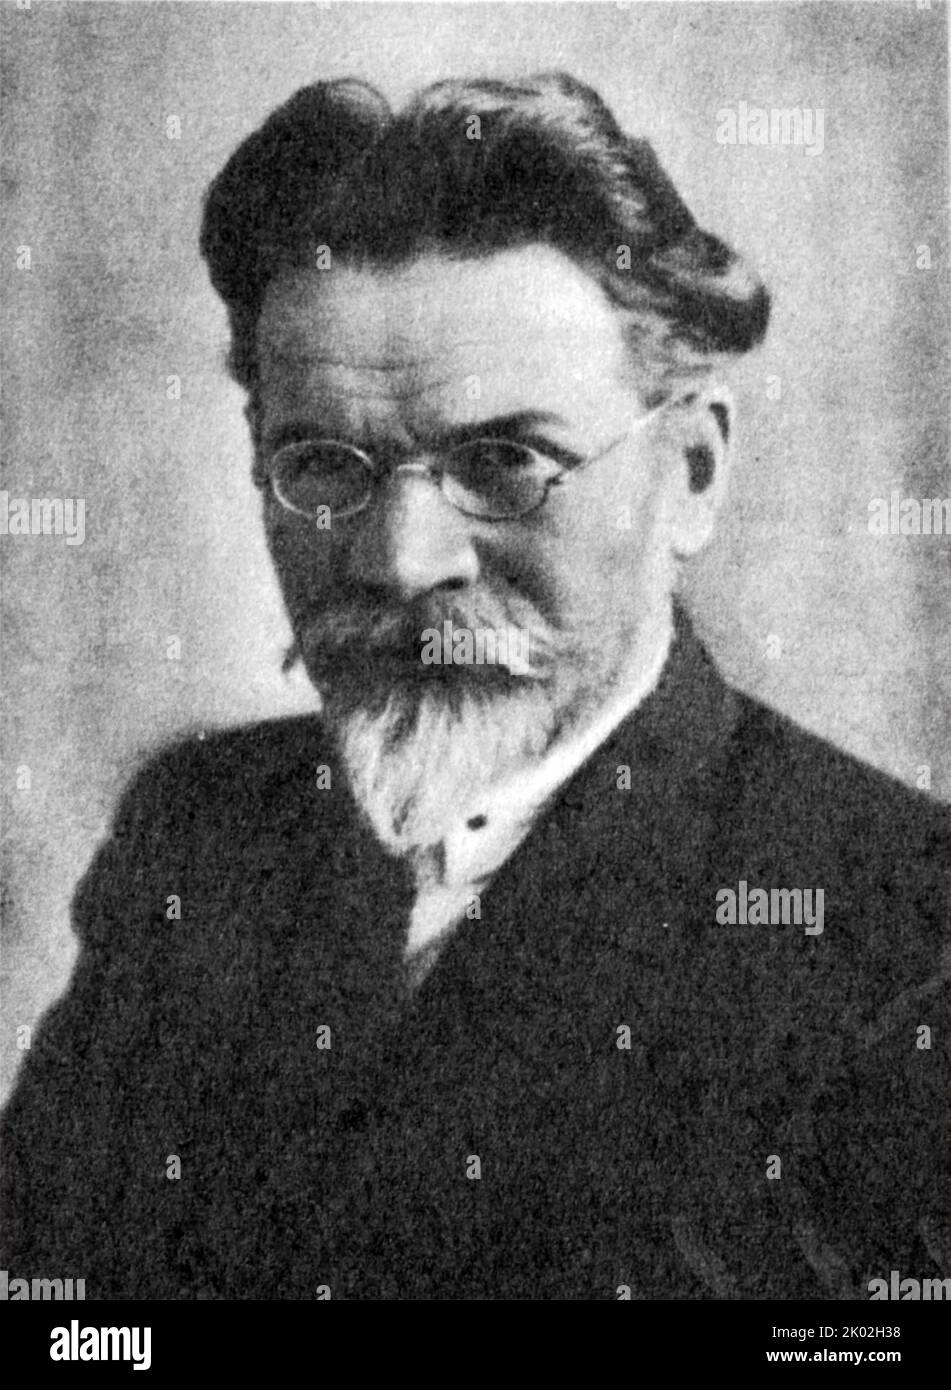 Mikhail Ivanovich Kalinin (1875 - 1946), bolscevico rivoluzionario e di un uomo politico sovietico. Ha servito come capo di stato del russo federativa sovietica Repubblica socialista e successivamente dell'Unione Sovietica da 1919 a 1946. Dal 1926, egli è stato un membro del Politburo del Partito Comunista dell'Unione Sovietica. Foto Stock